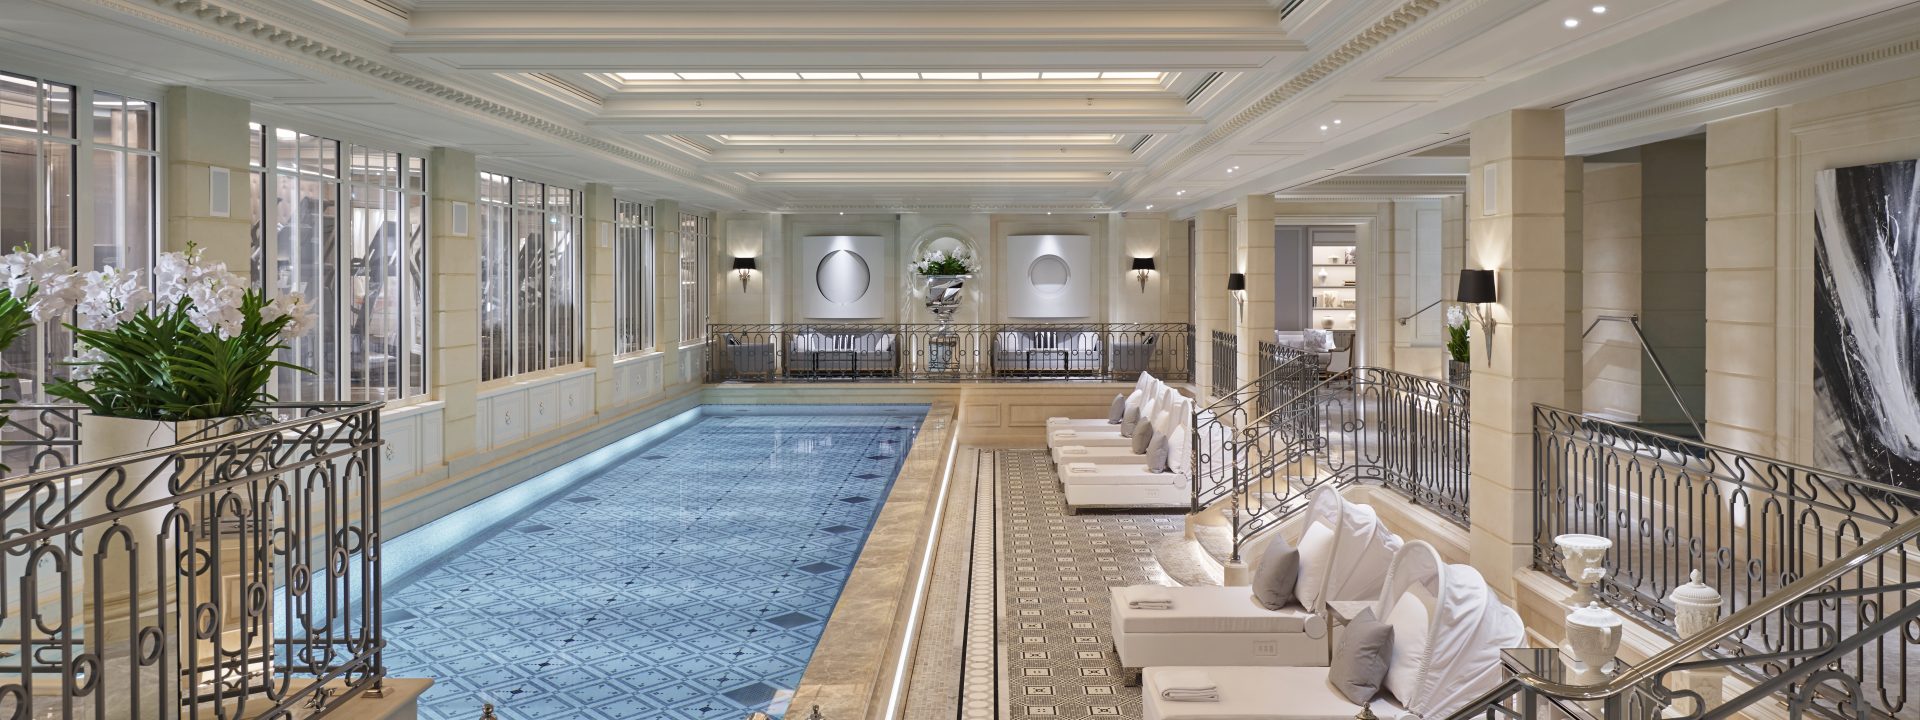 Ooh la la: Four Seasons Hotel George V unveils new luxury Le Spa